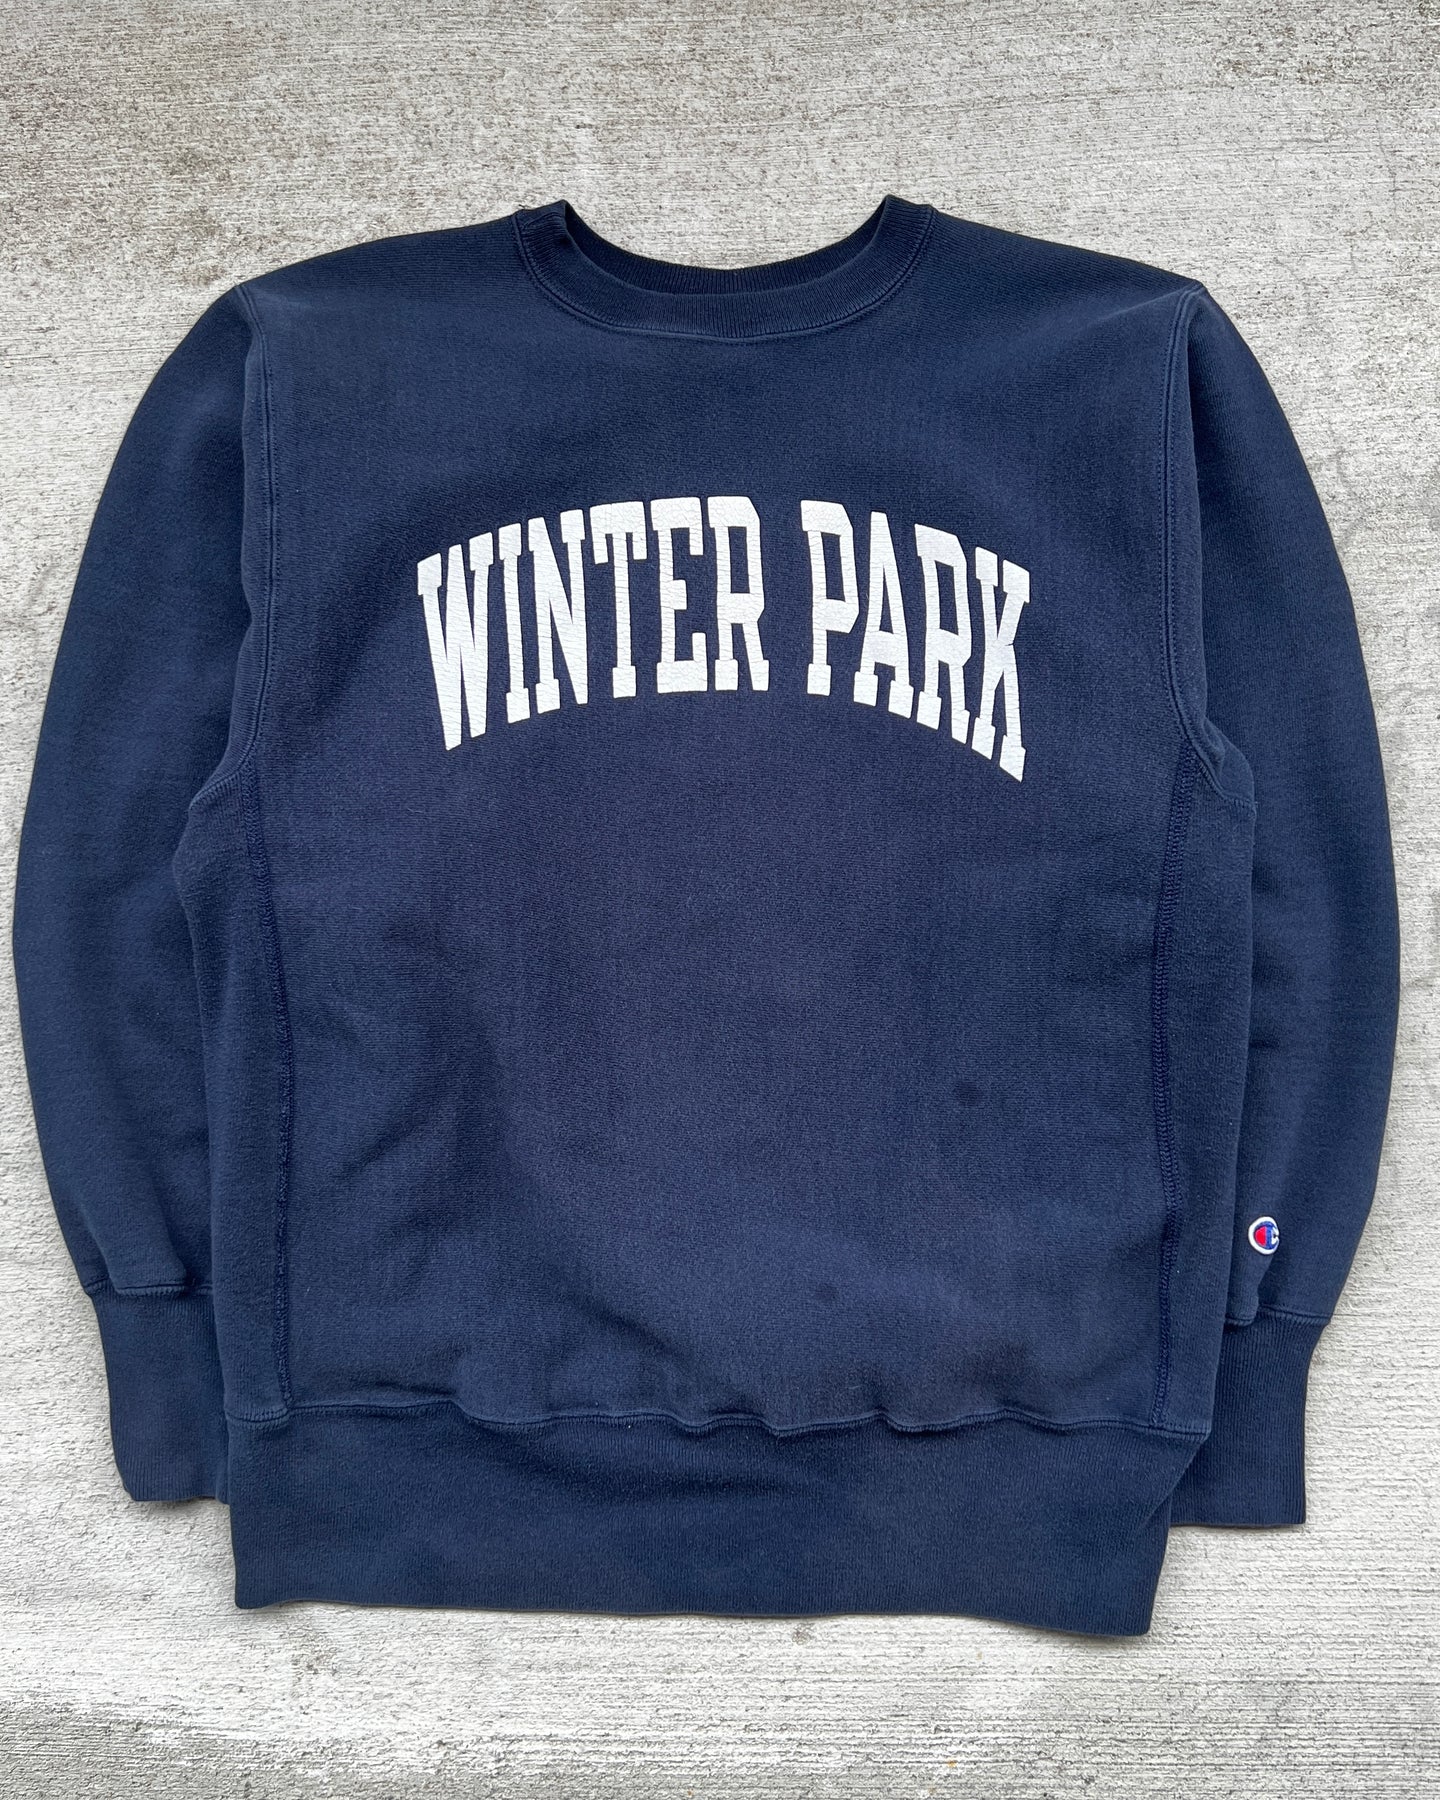 1990s Champion Winter Park Reverse Weave Crewneck Sweatshirt - Size Large